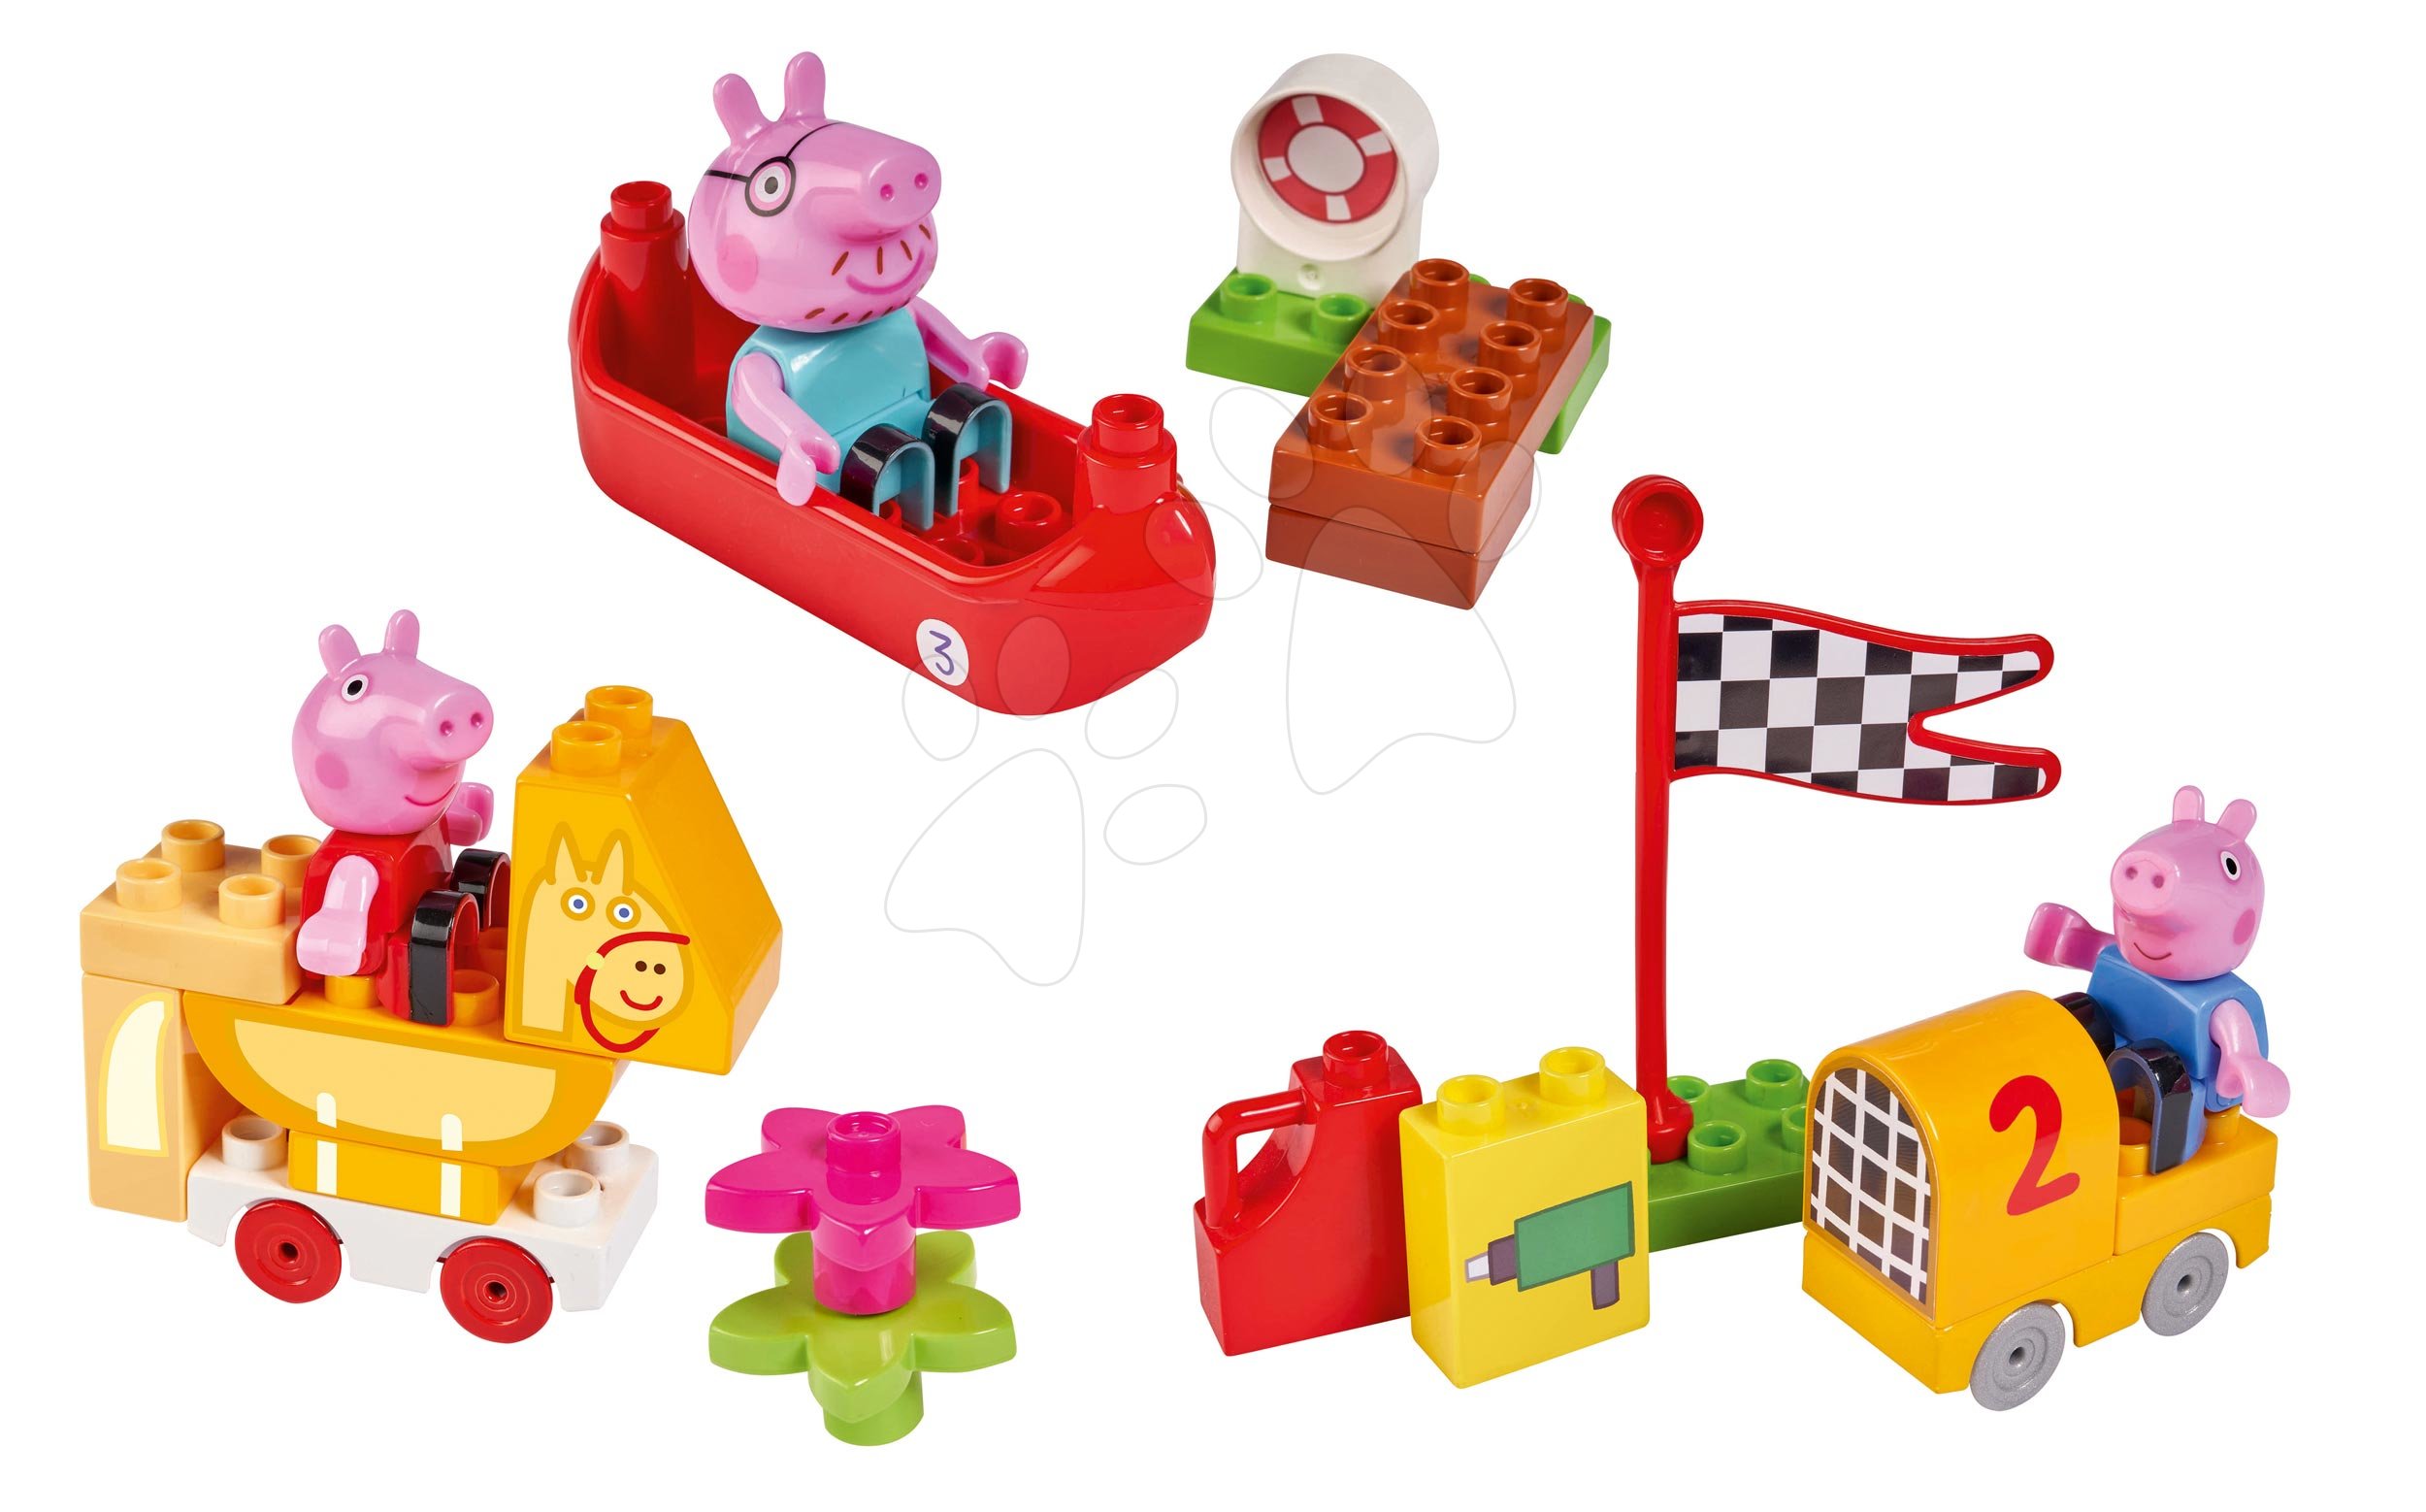 Építőjátékok BIG-Bloxx mint lego - Épitőjáték Peppa Pig Starter Sets PlayBIG Bloxx figurával - 3 fajta épitőjáték készlet 1,5-5 évesnek